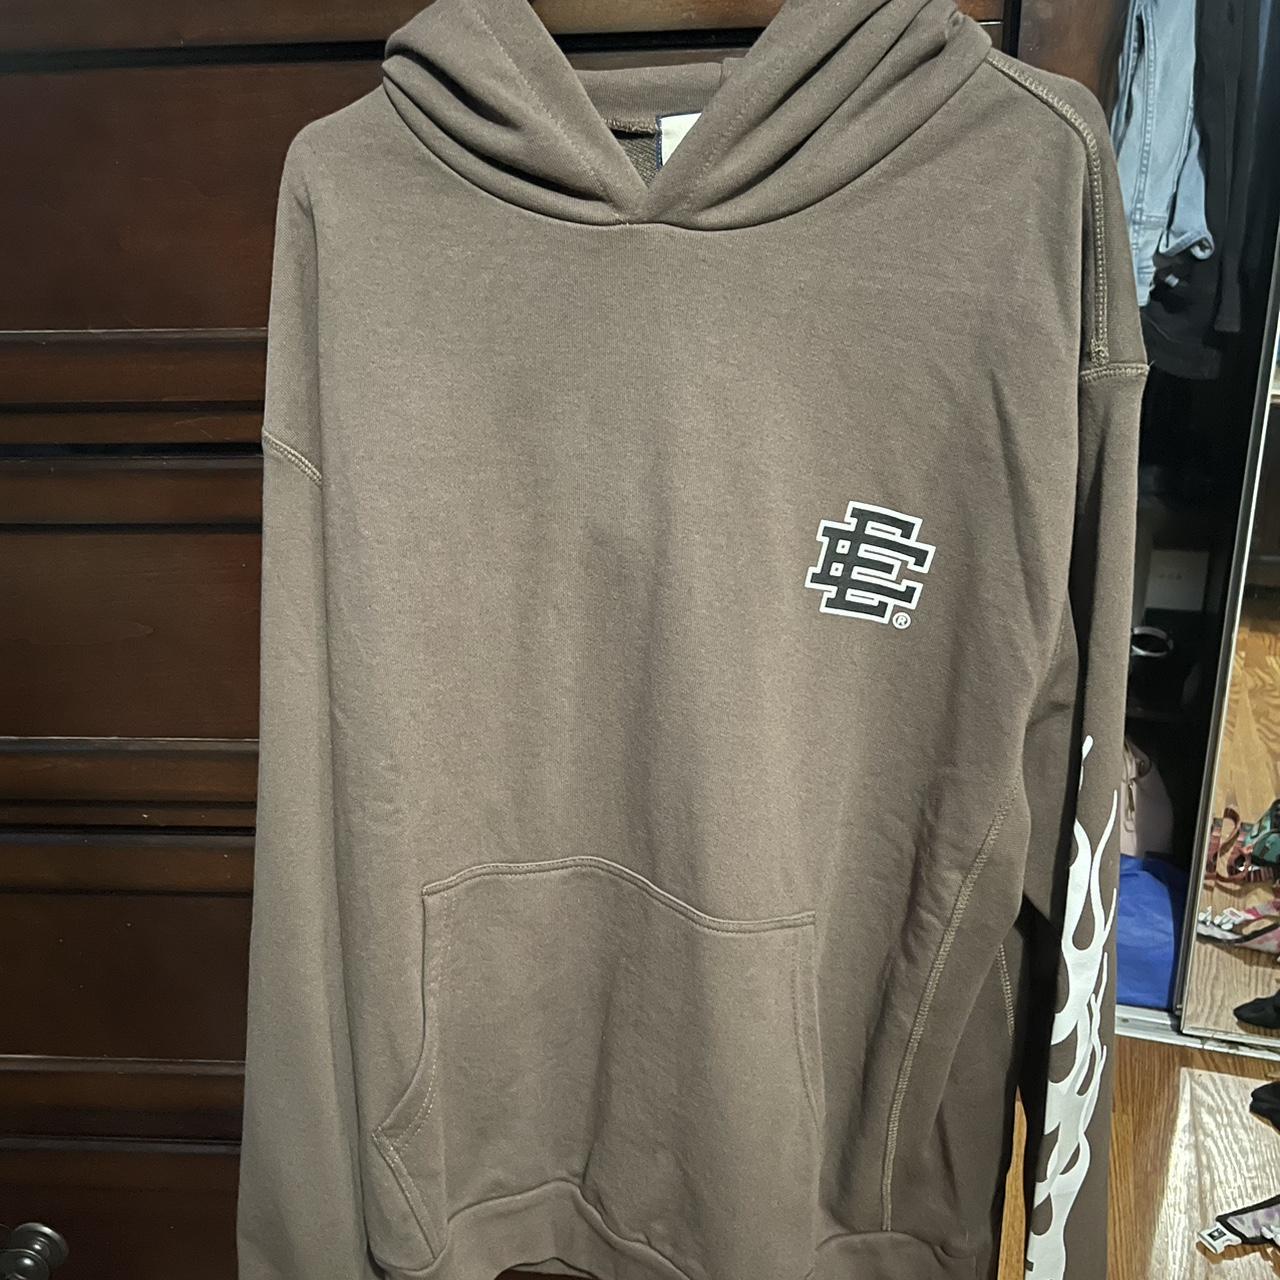 eric emanuel hoodie grey